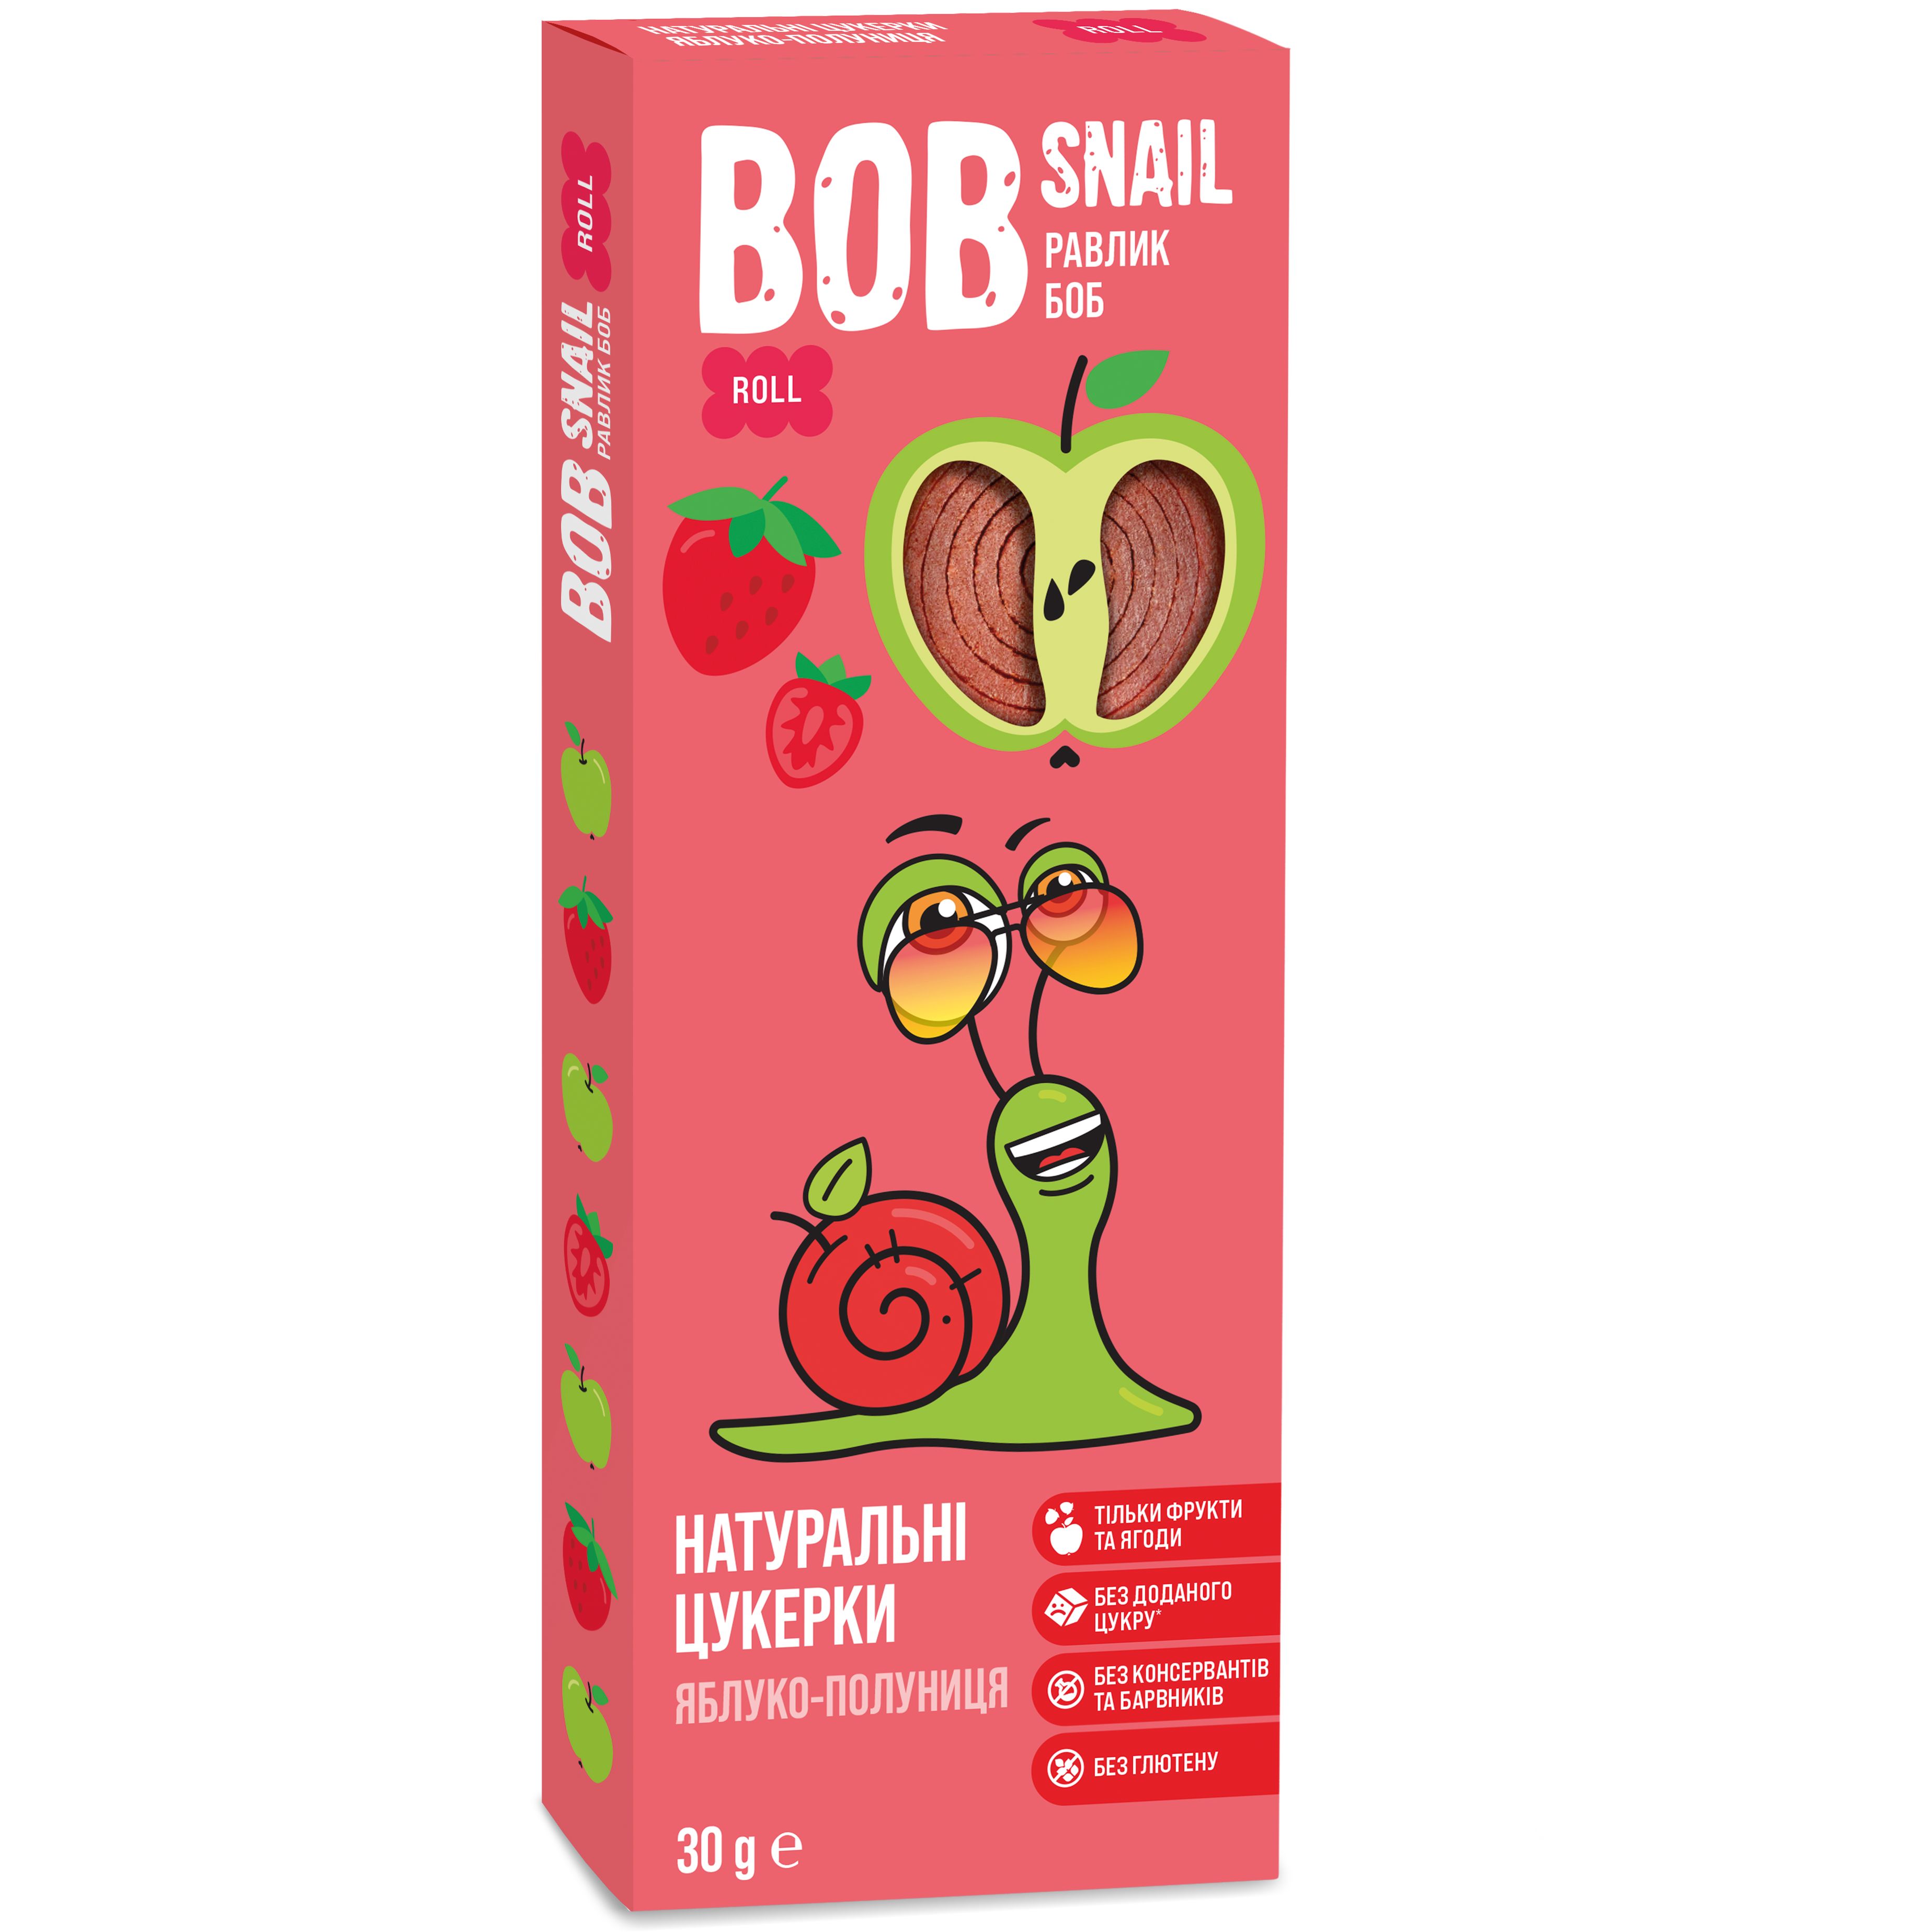 Фруктовые яблочно-клубничные конфеты Bob Snail 30 г - фото 1